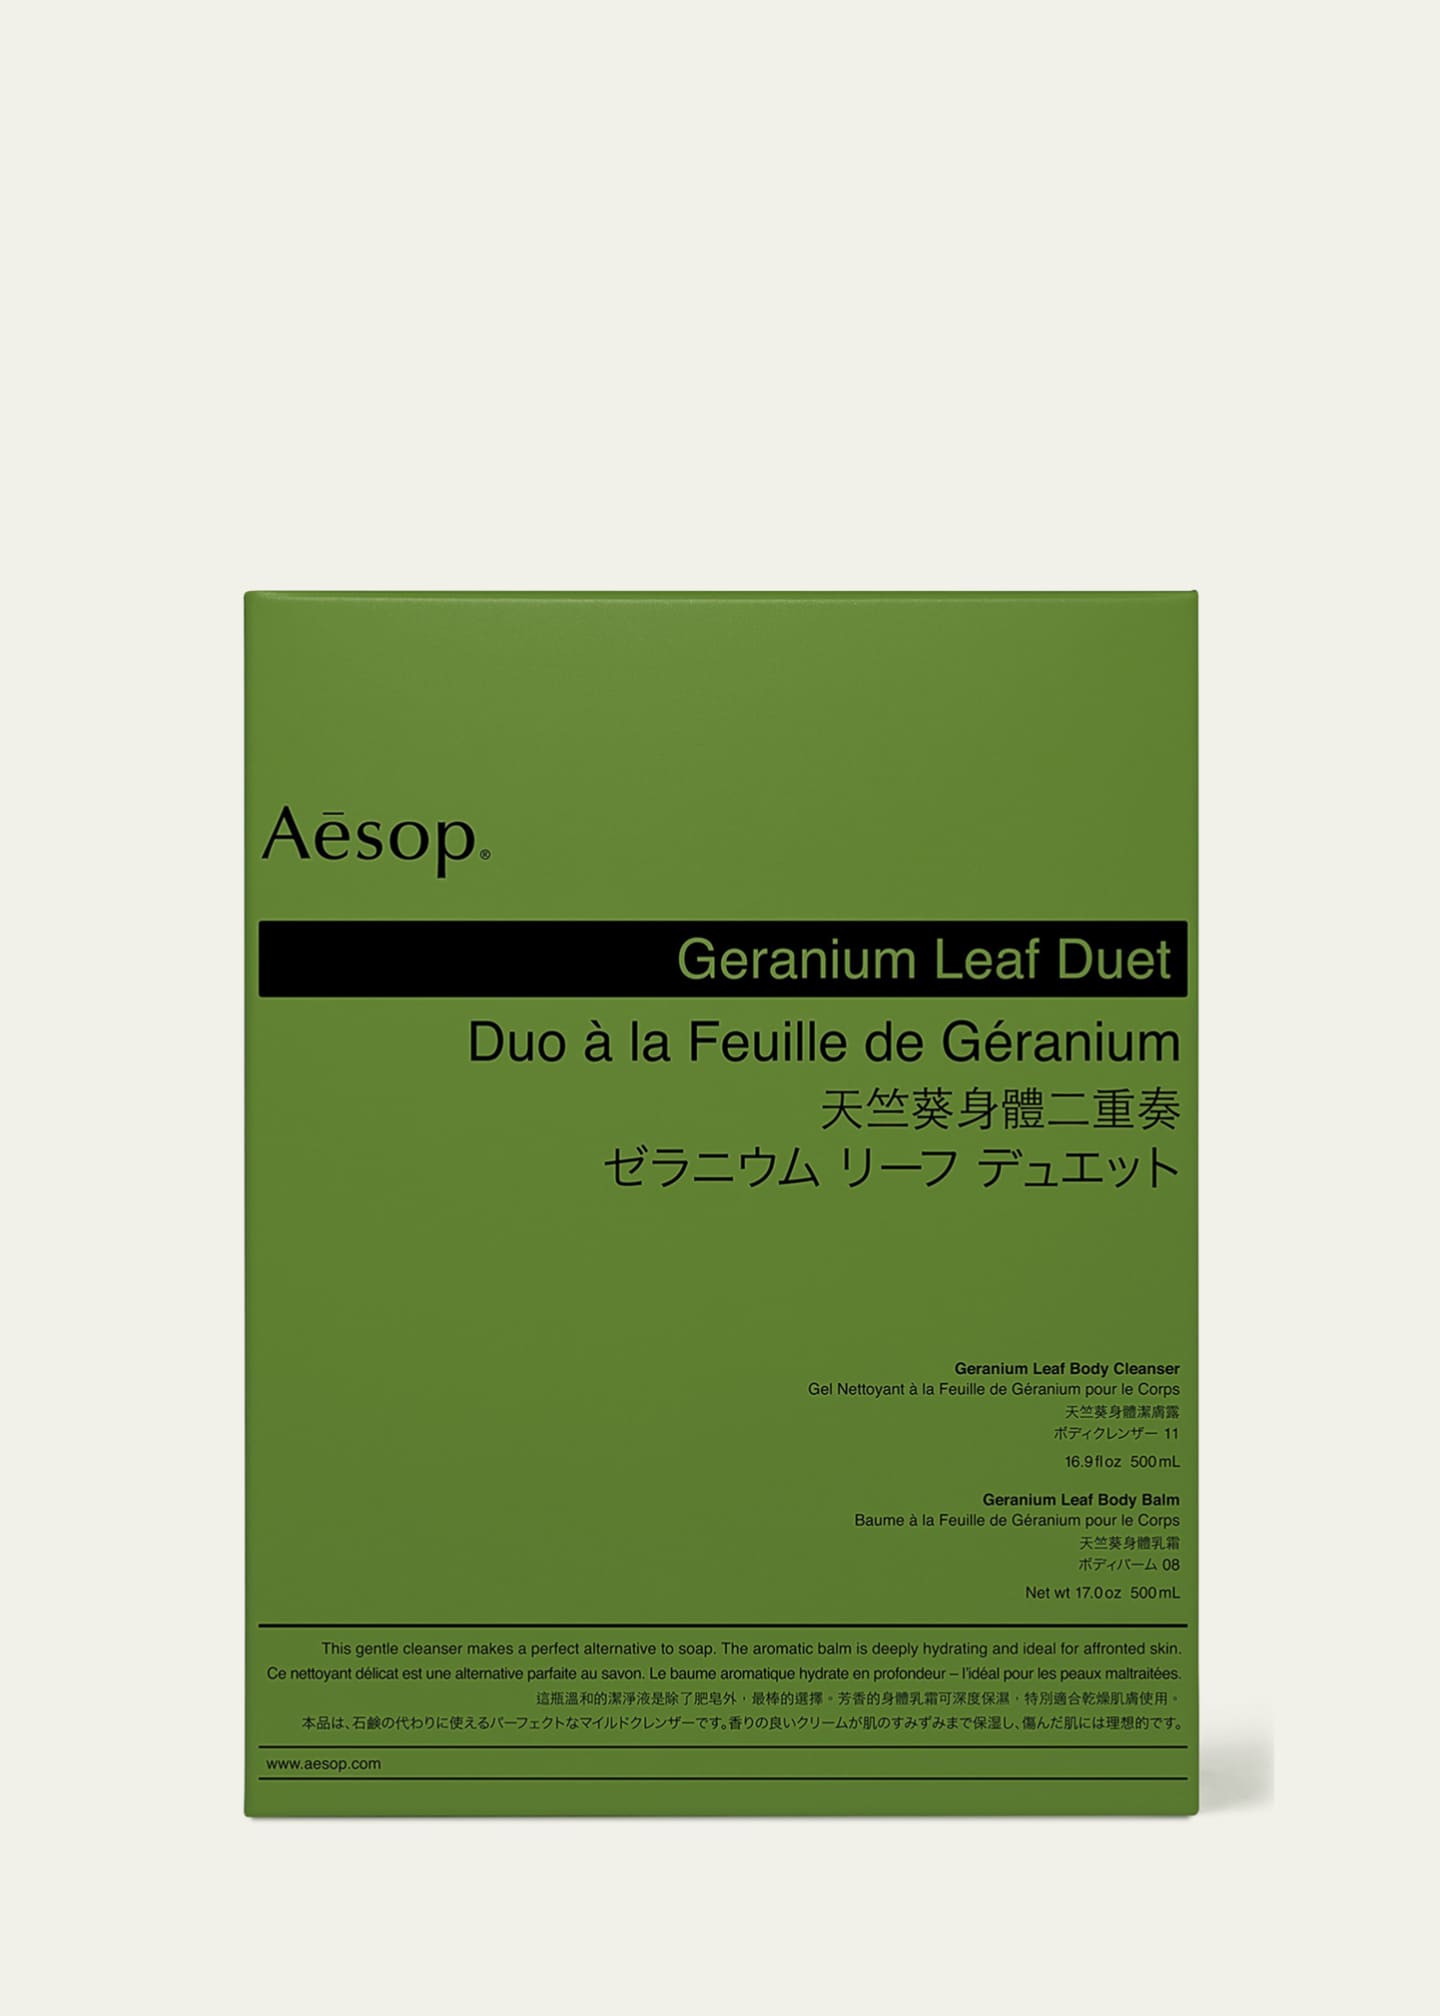 Aesop Geranium Leaf Body Care Kit (Duet) Image 2 of 2